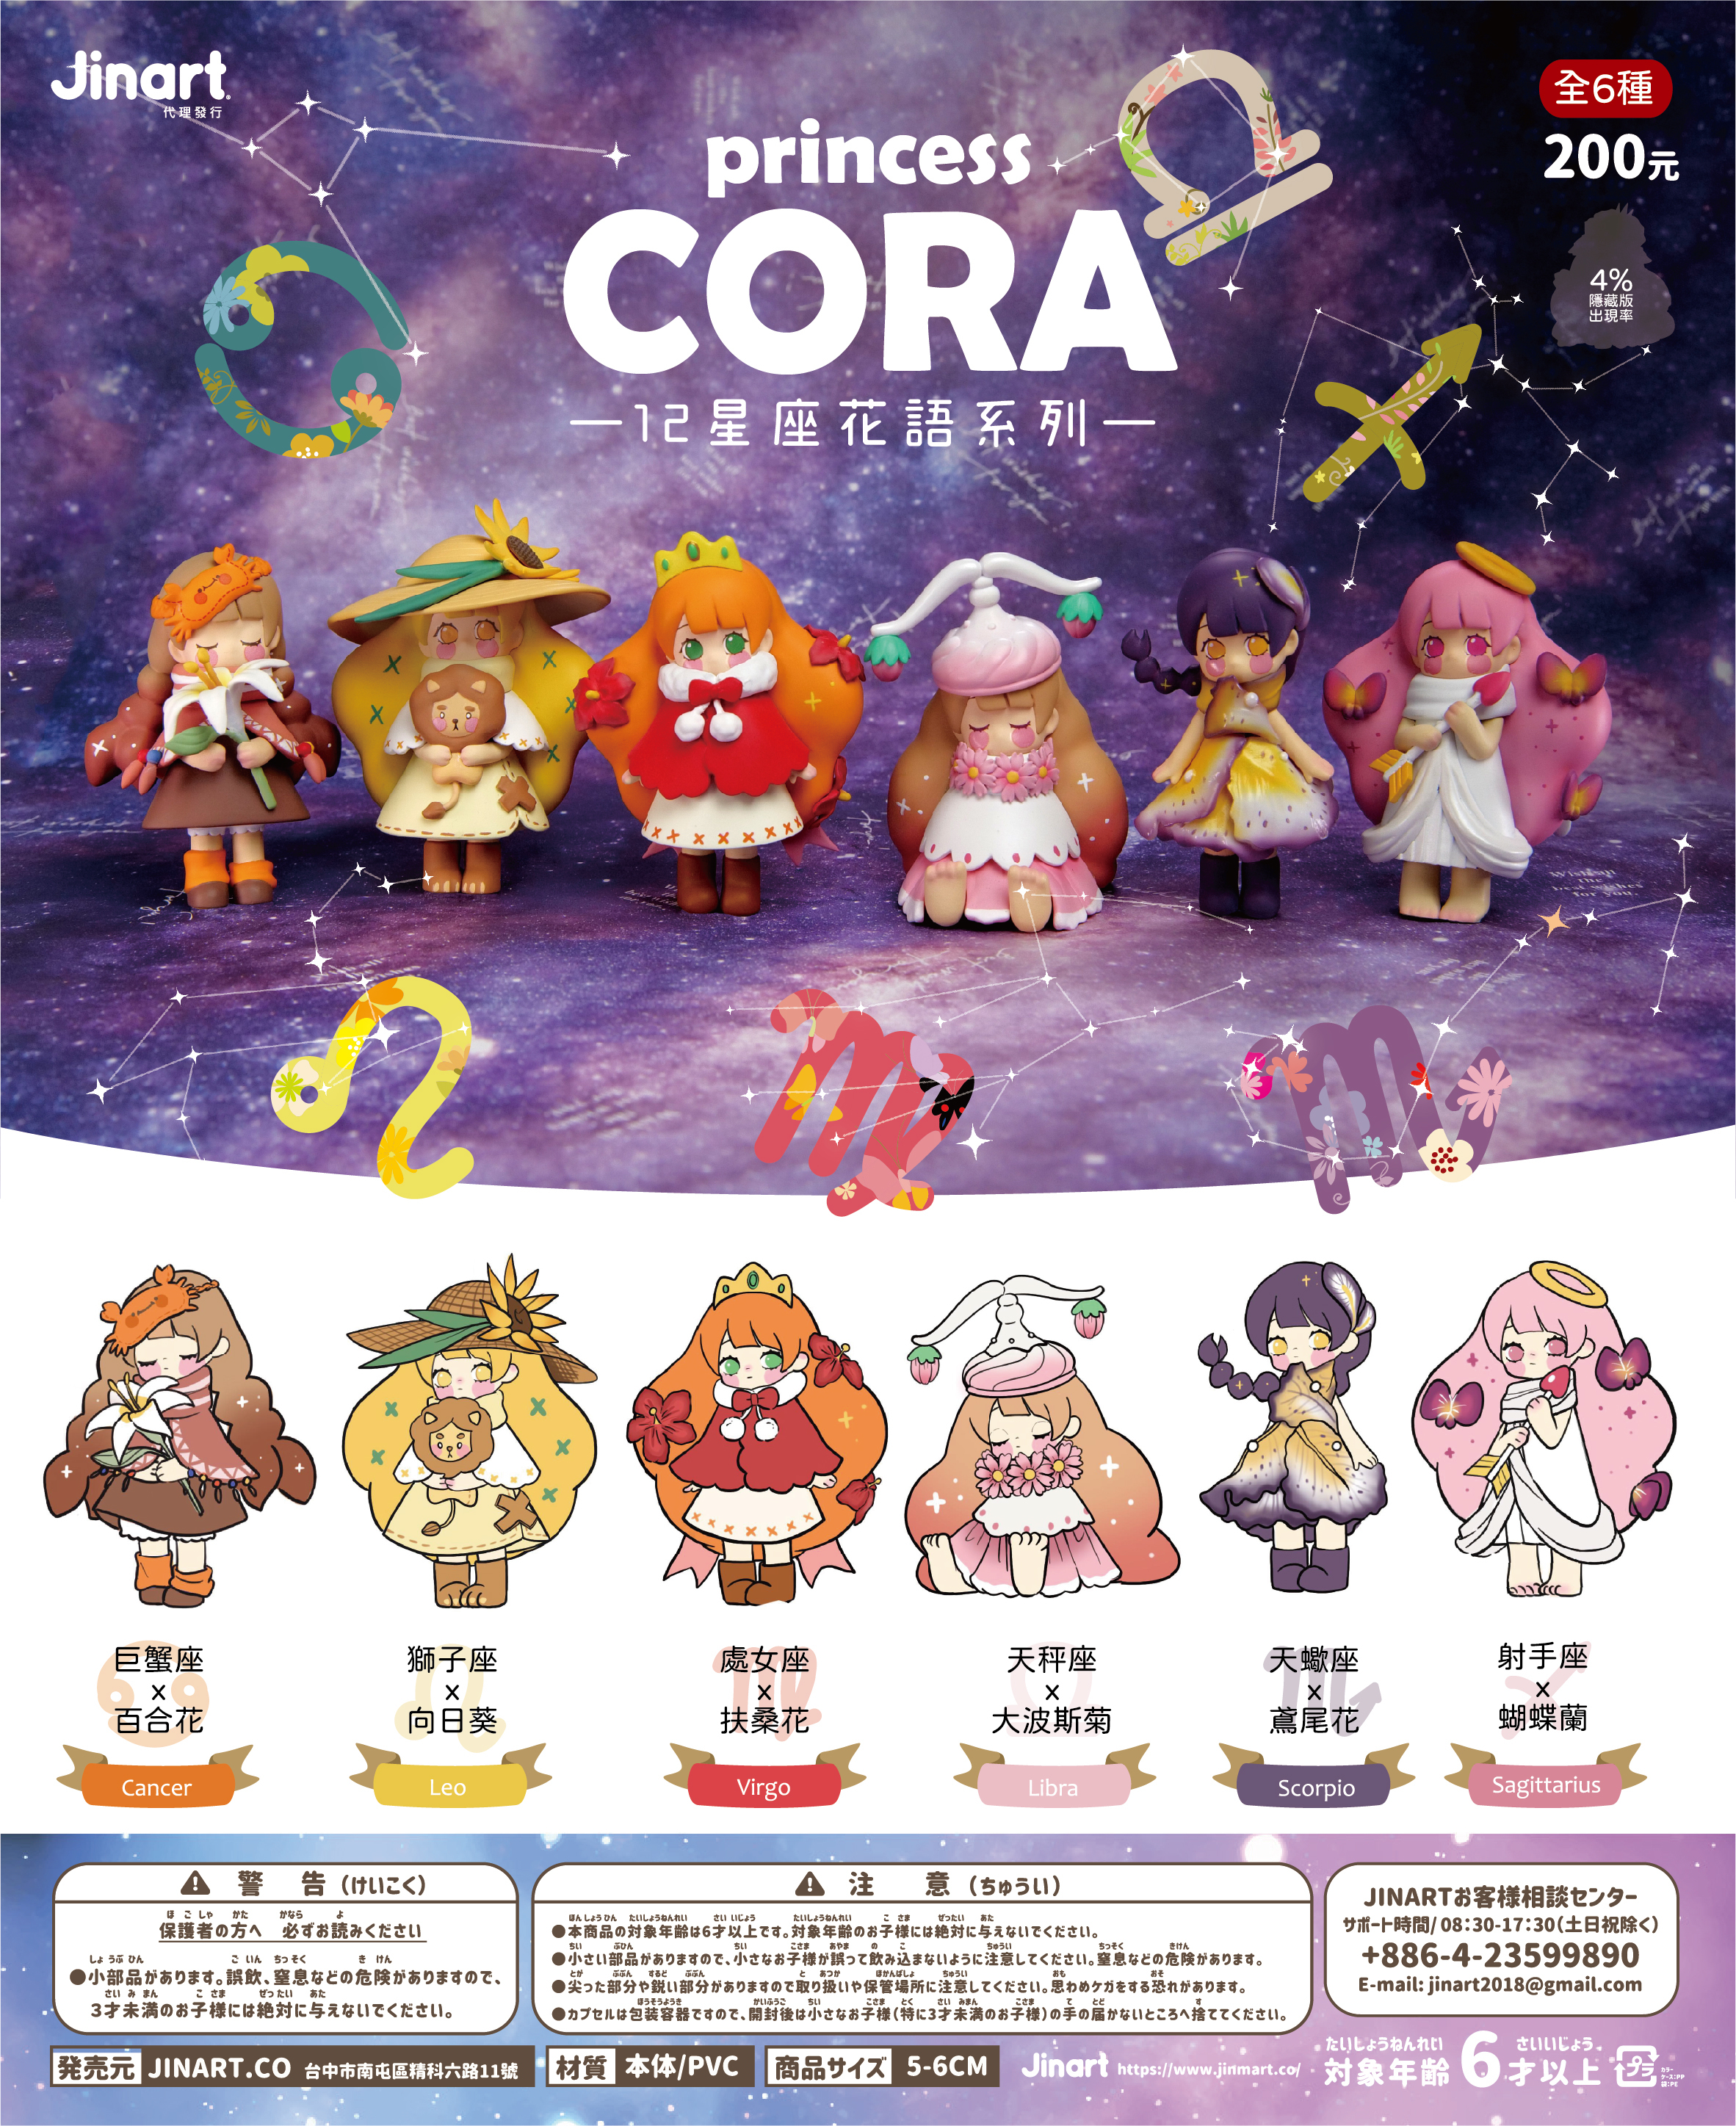 現貨 全套中盒 Princess Cora 十二星座花語系列扭蛋公仔全套12款